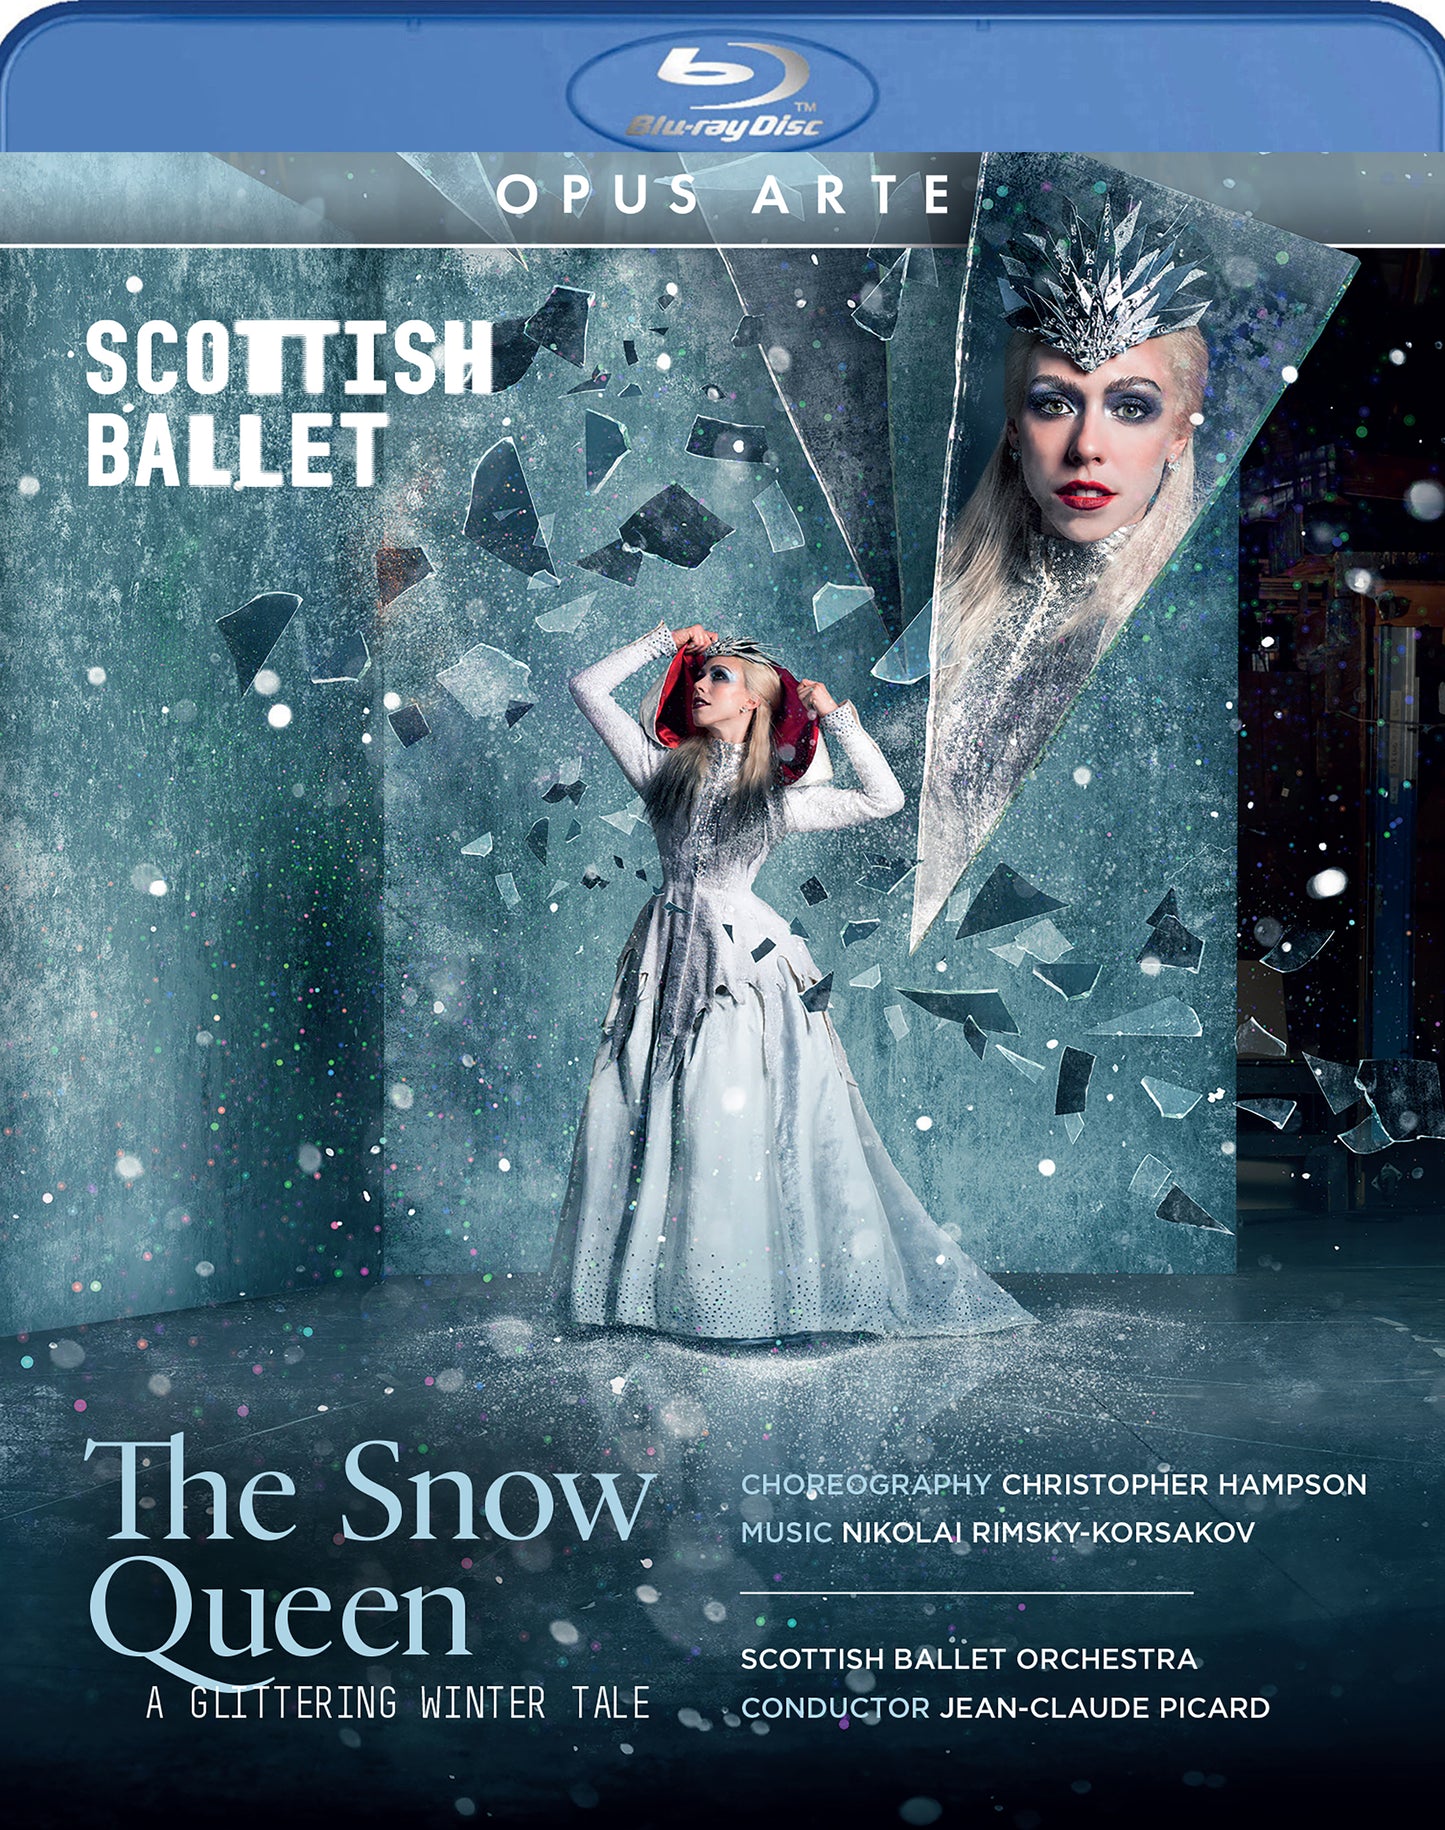 The Snow Queen  Scottish Ballet Orchestra, Scottish Ballet